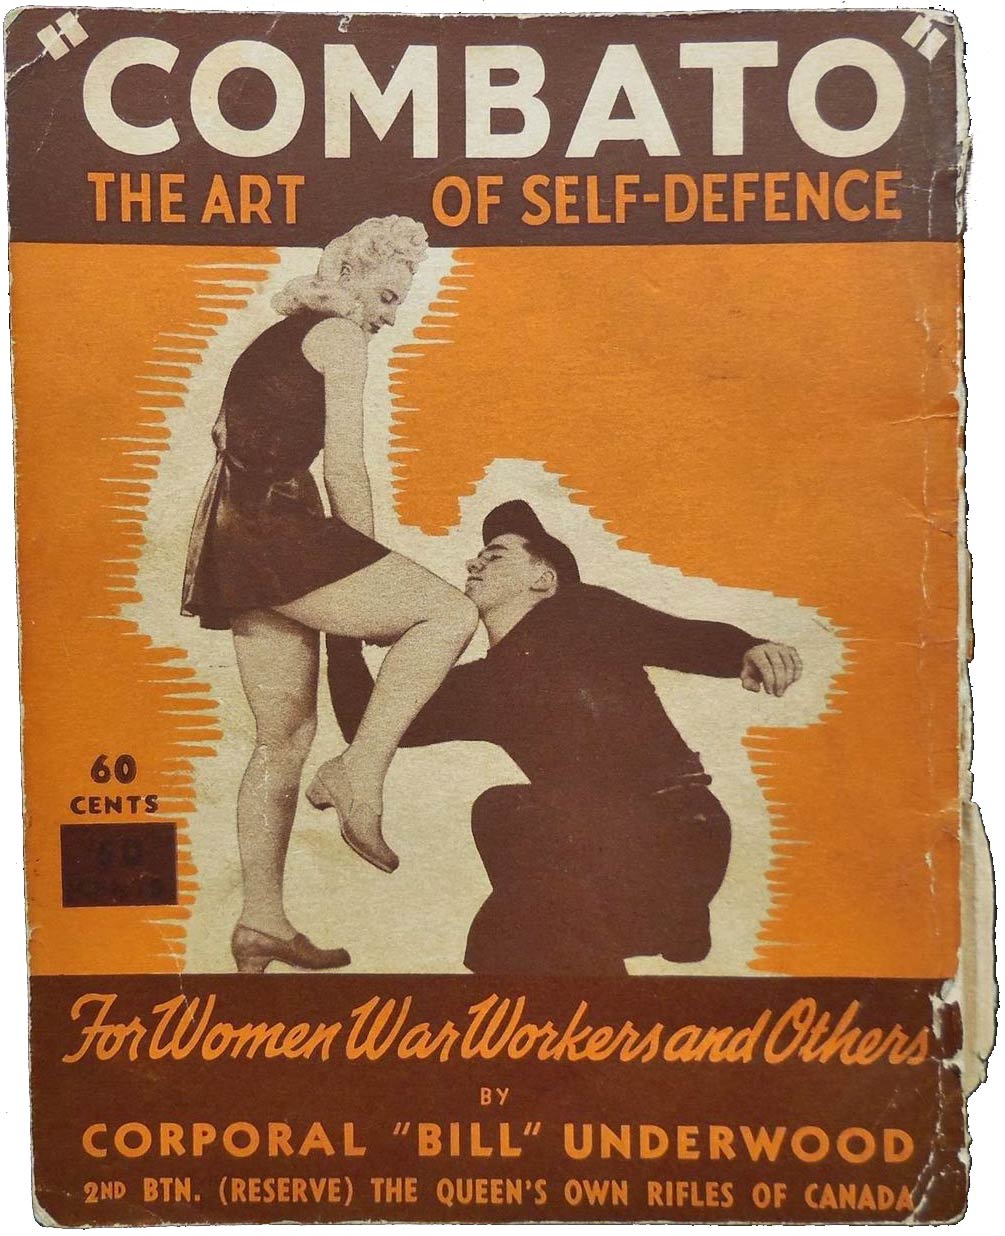 Το βιβλίο του Bill Underwood: Combato, The art of Self-Defence - For Women War Workers and Others